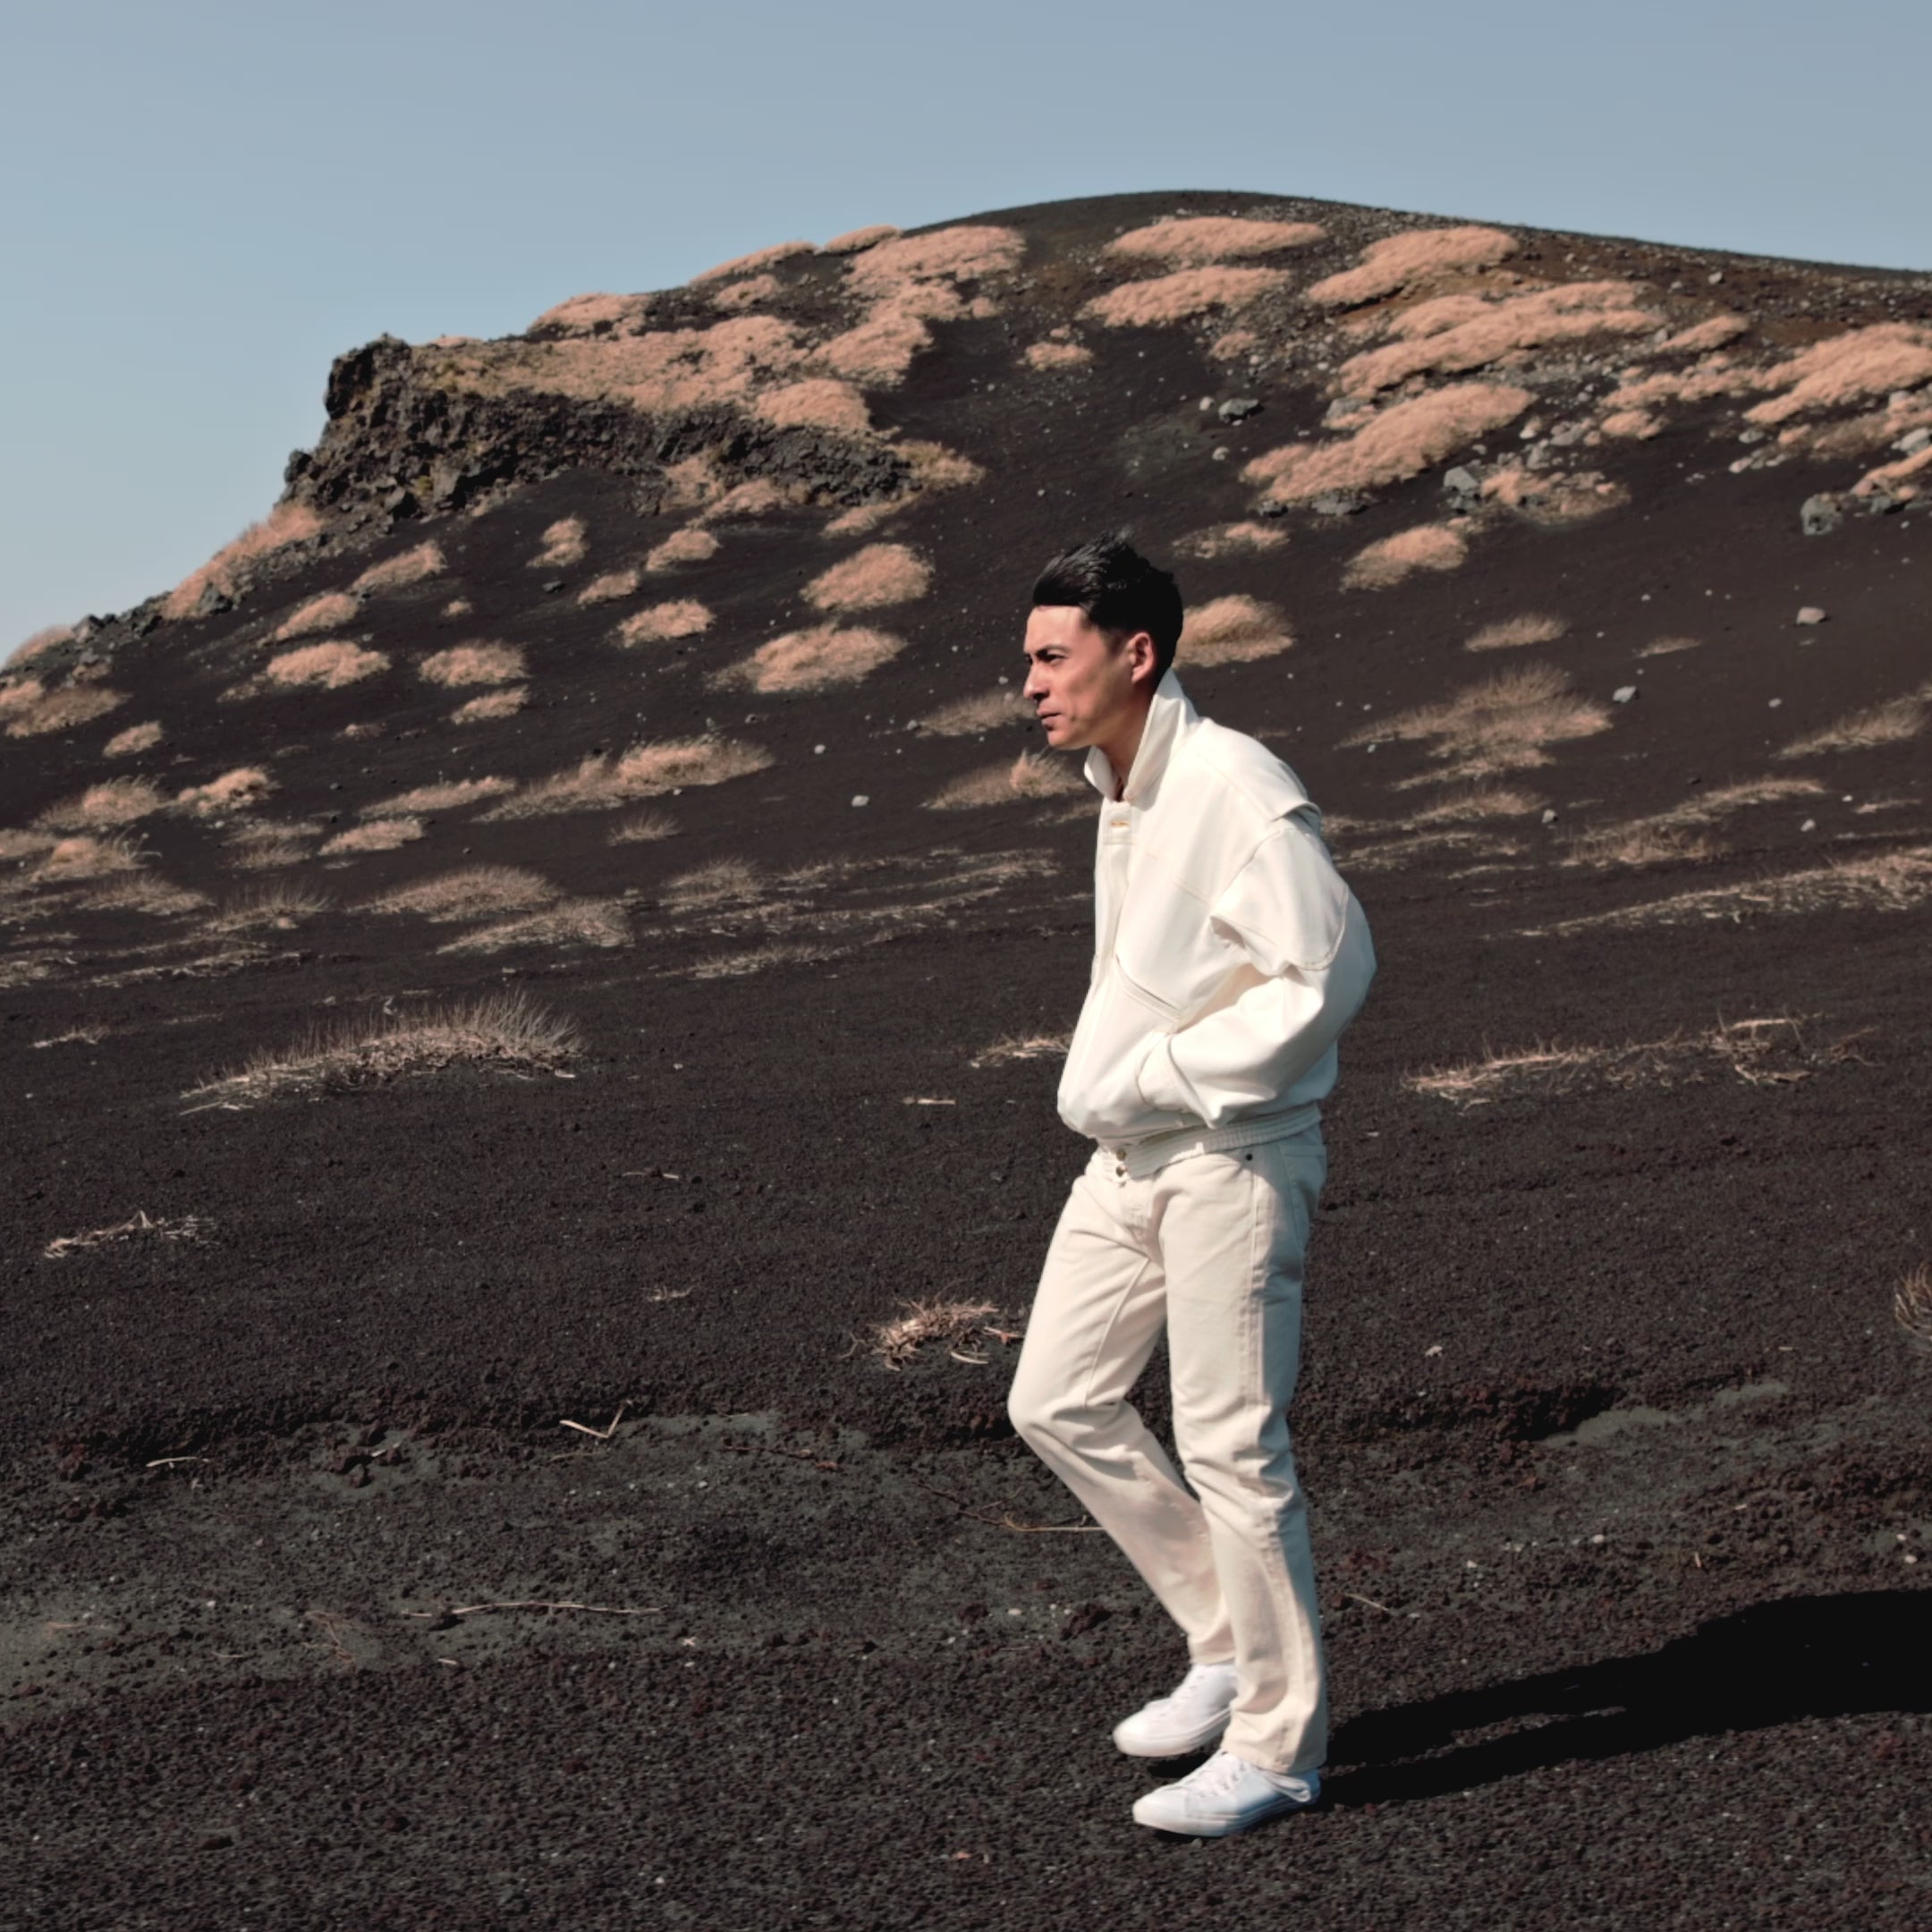 載入影片：影片展示了 CAPITÁN STRATOCRUISER 夾克，描繪了一名男子在火山旁行走的情景。